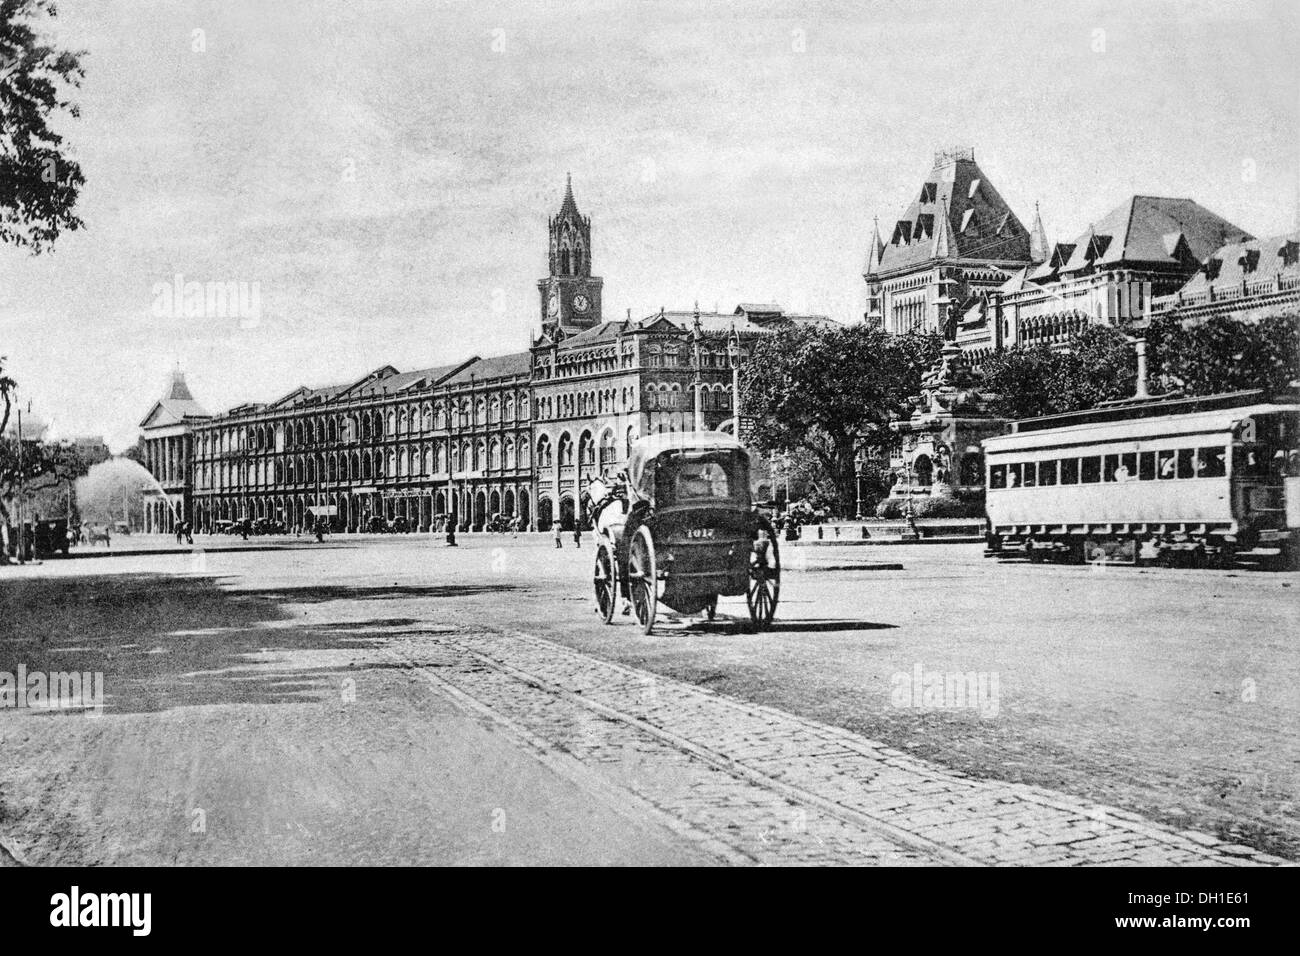 Tram et chariot à cheval à Flora Fountain Humatma Chowk avec High court Rajabai horloge Tower Bombay Mumbai Maharashtra Inde Asie ancien vintage image de 1900s Banque D'Images